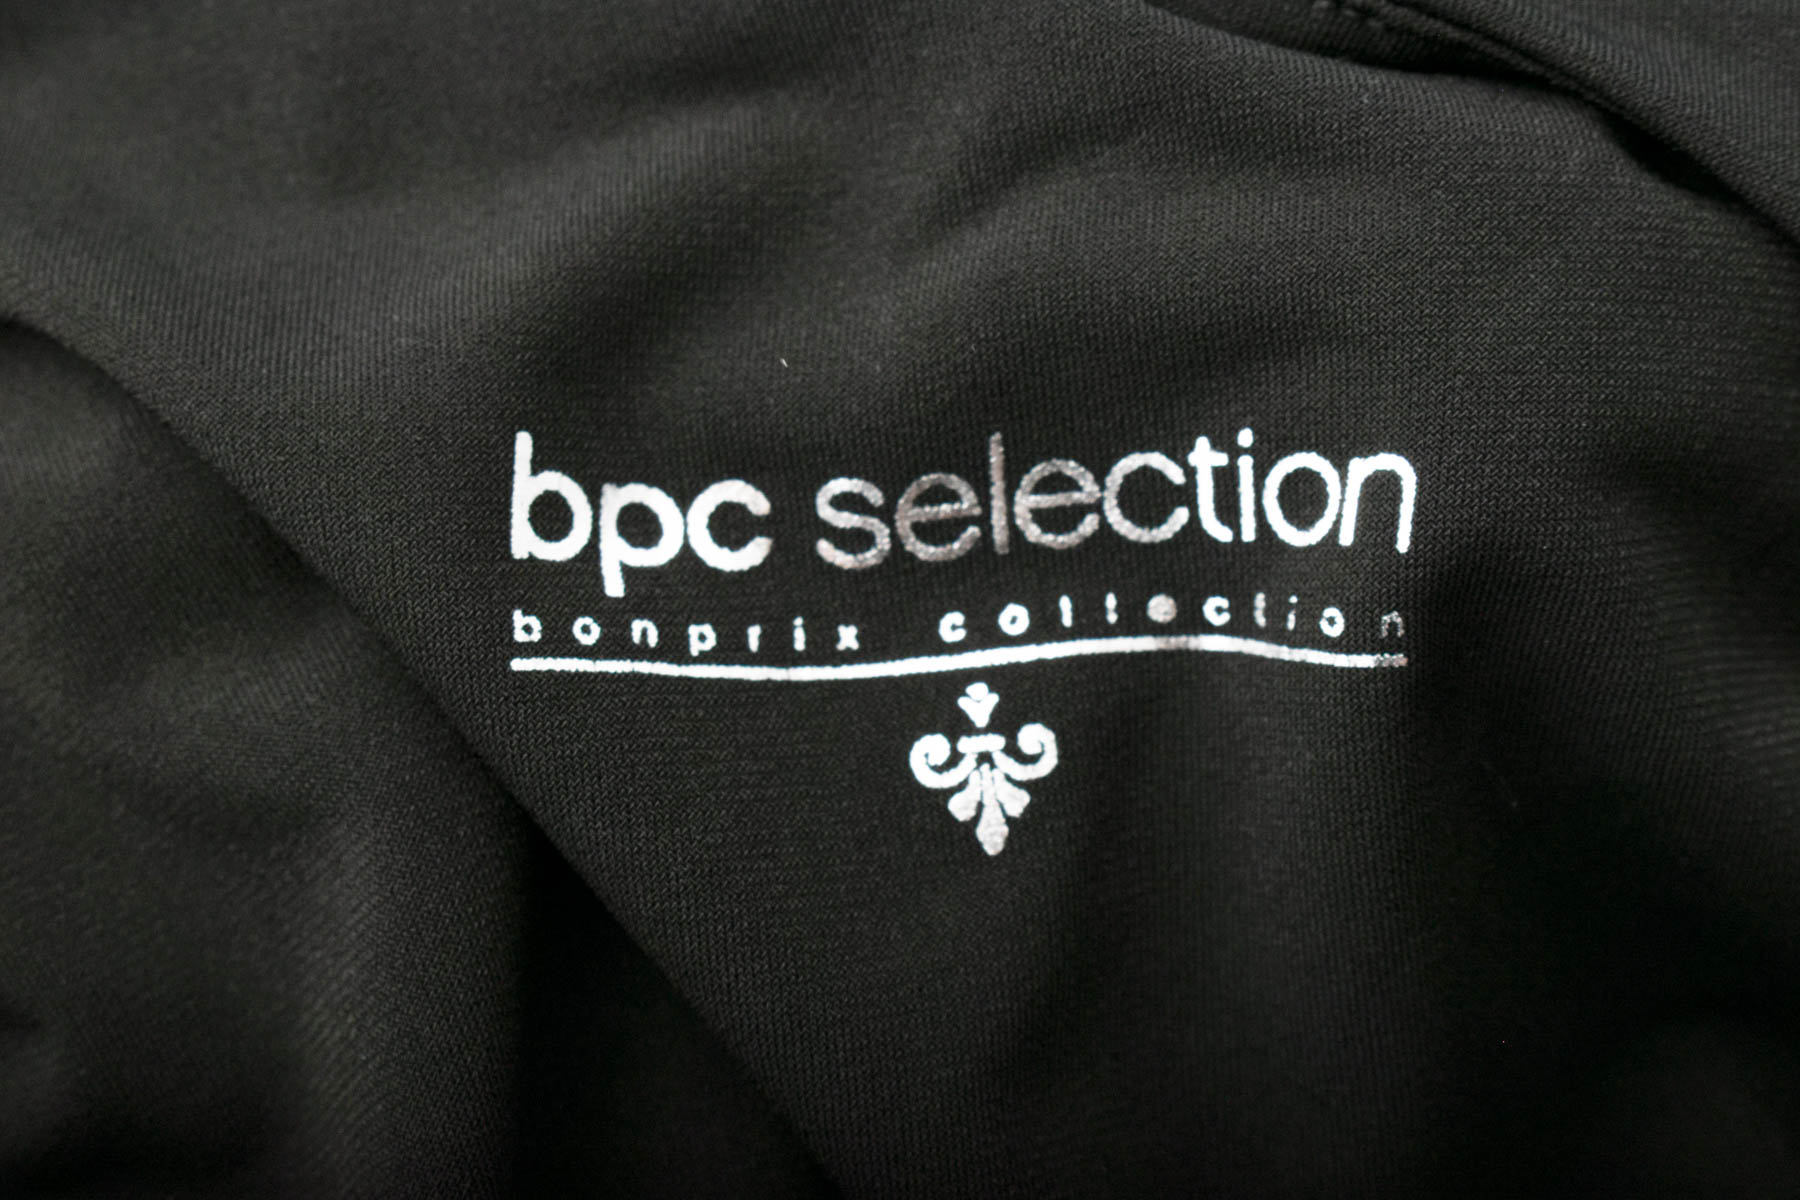 Φόρεμα - bpc selection bonprix collection - 2